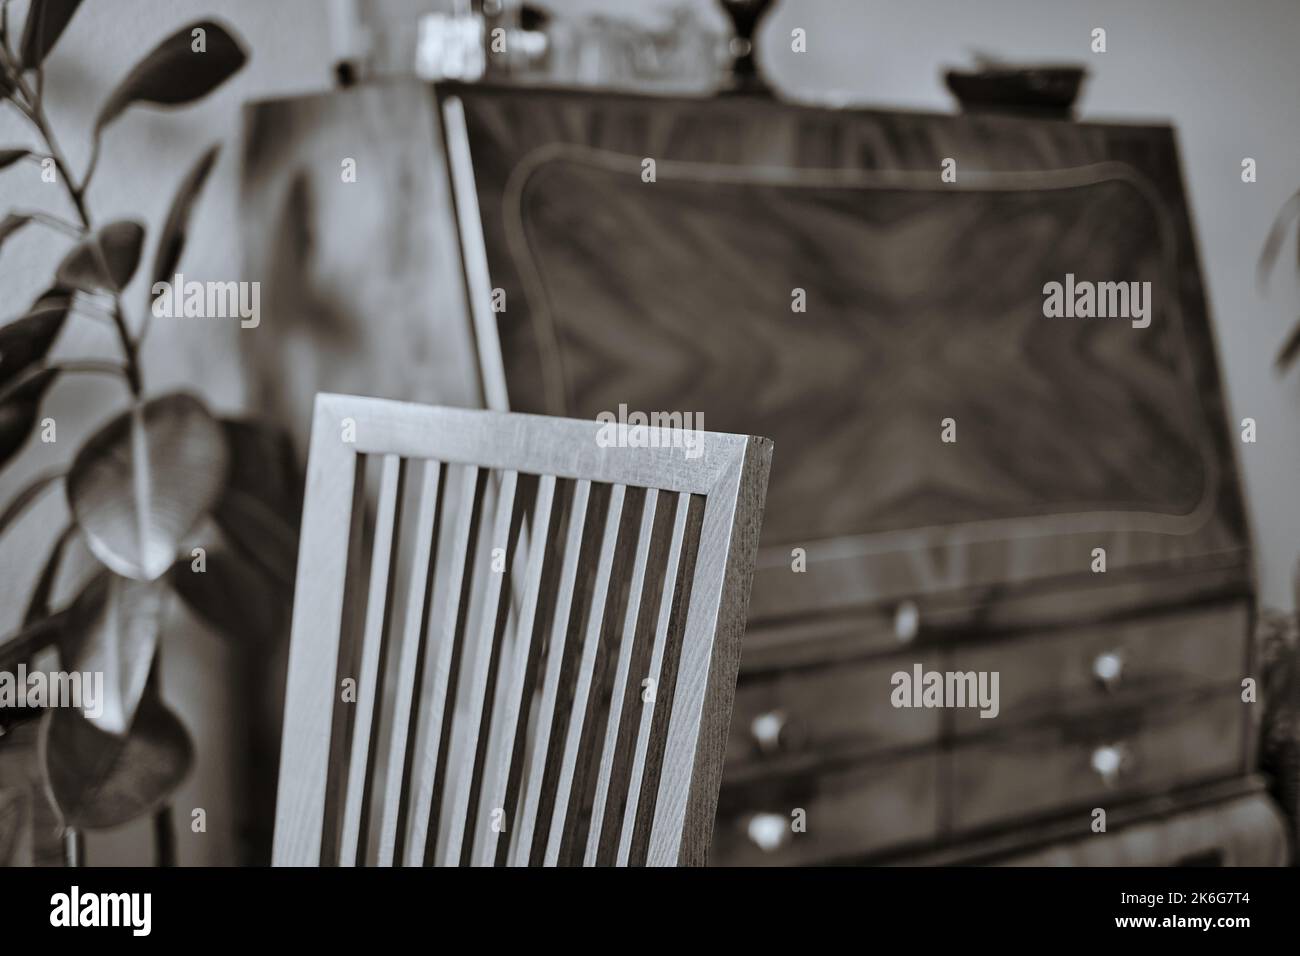 Immagine interna di una sedia in legno di faggio che passa dalla nitidezza alla sfocatura con un antico segretario fuori fuoco sullo sfondo. Foto Stock